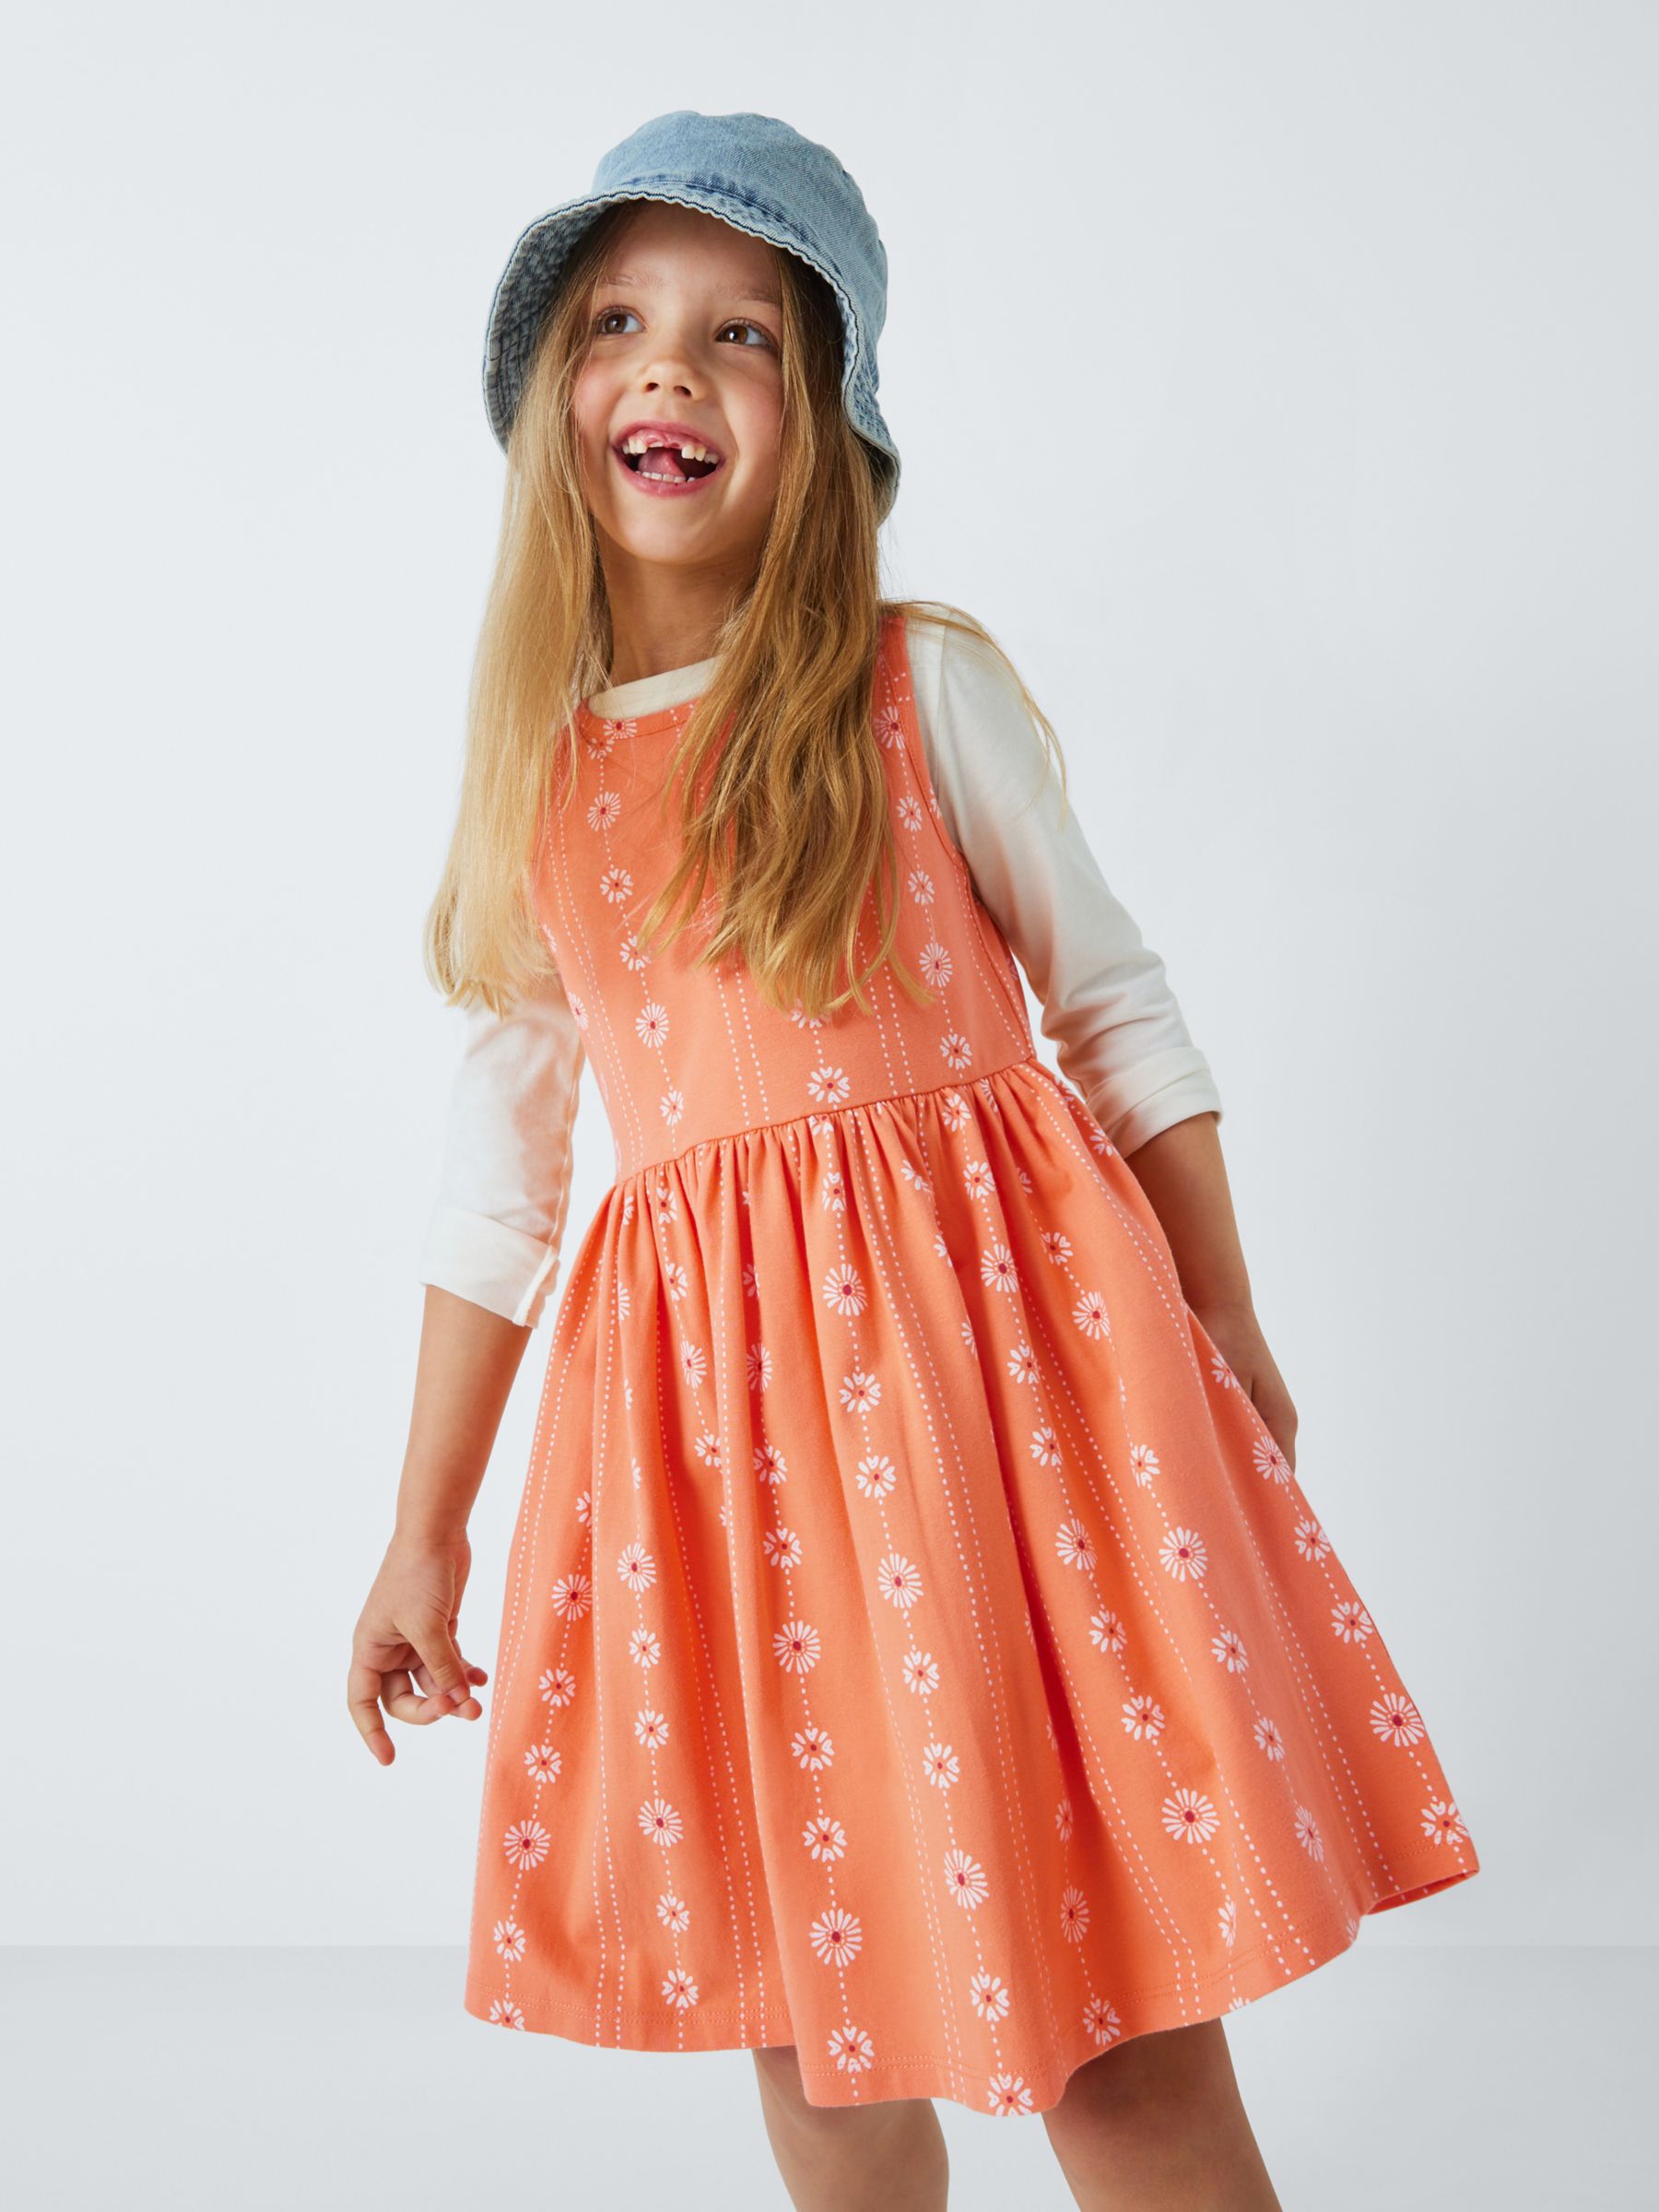 John Lewis Kids' Floral Stripe Sleeveless Smock Dress, Coral, 6 years